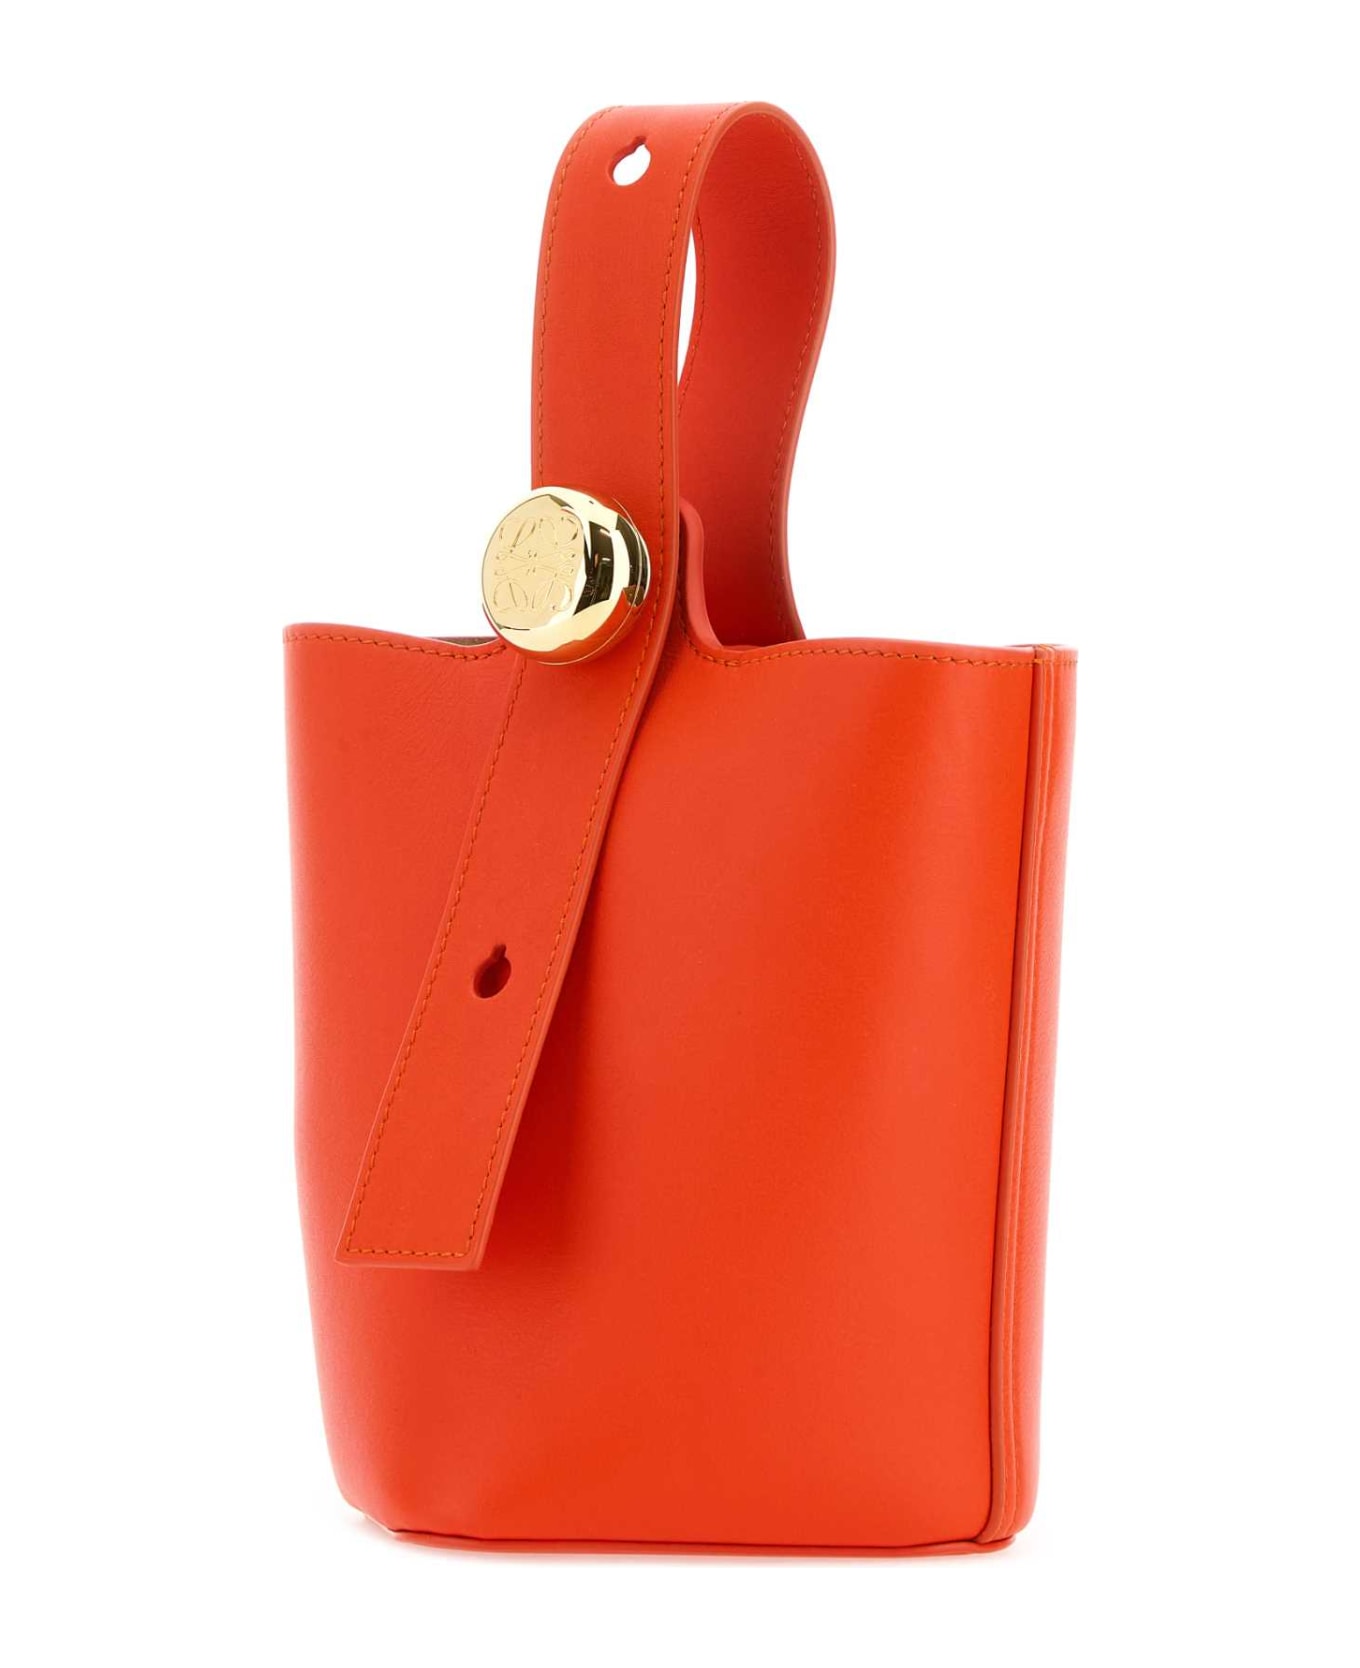 Loewe Dark Orange Leather Mini Pebble Bucket Bag - VIVIDORANGE